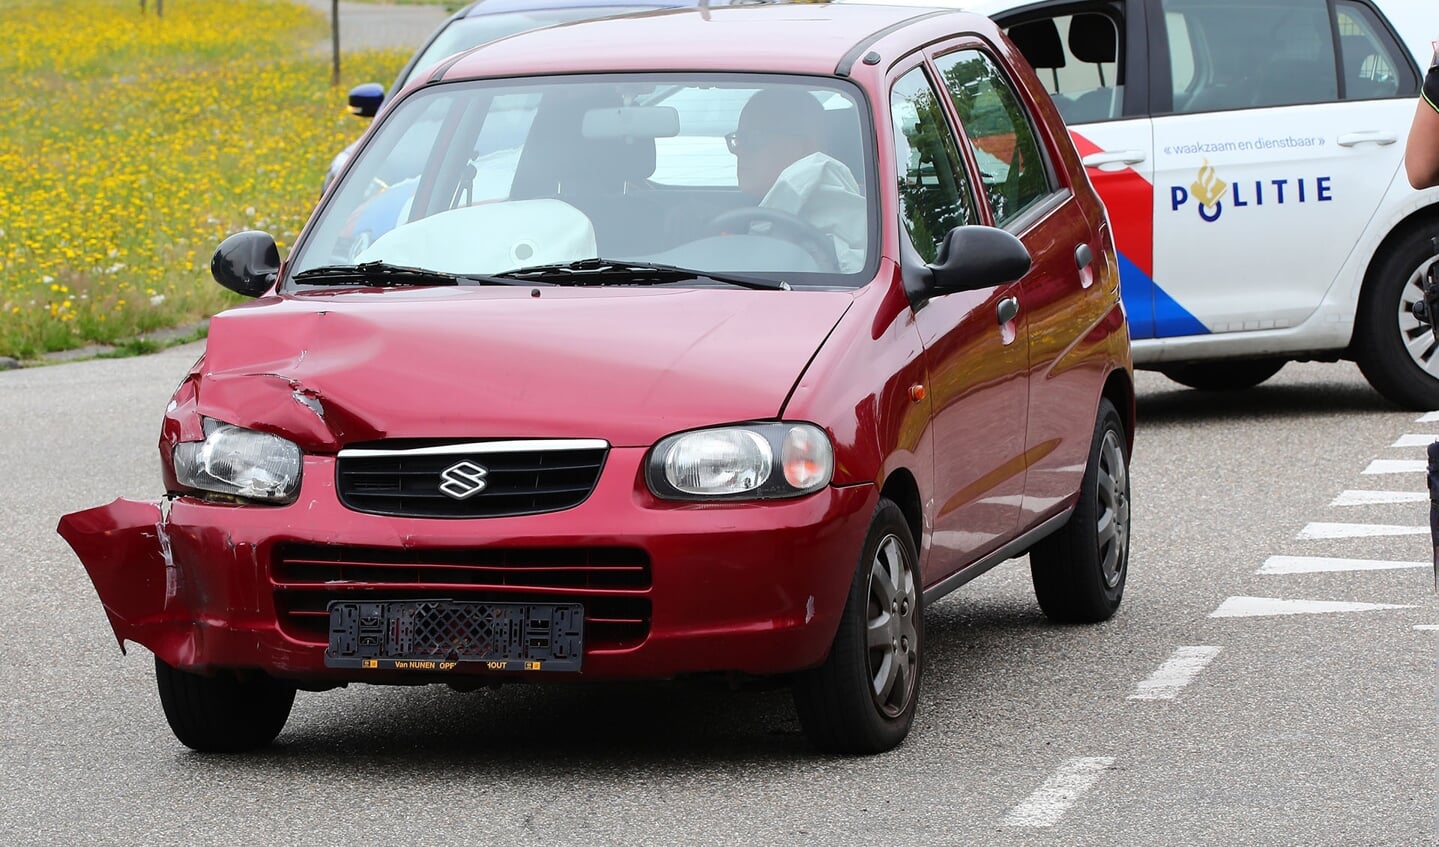 Auto's lopen veel schade op bij ongeval op Euterpelaan. (Foto: Charles Mallo, Foto Mallo)